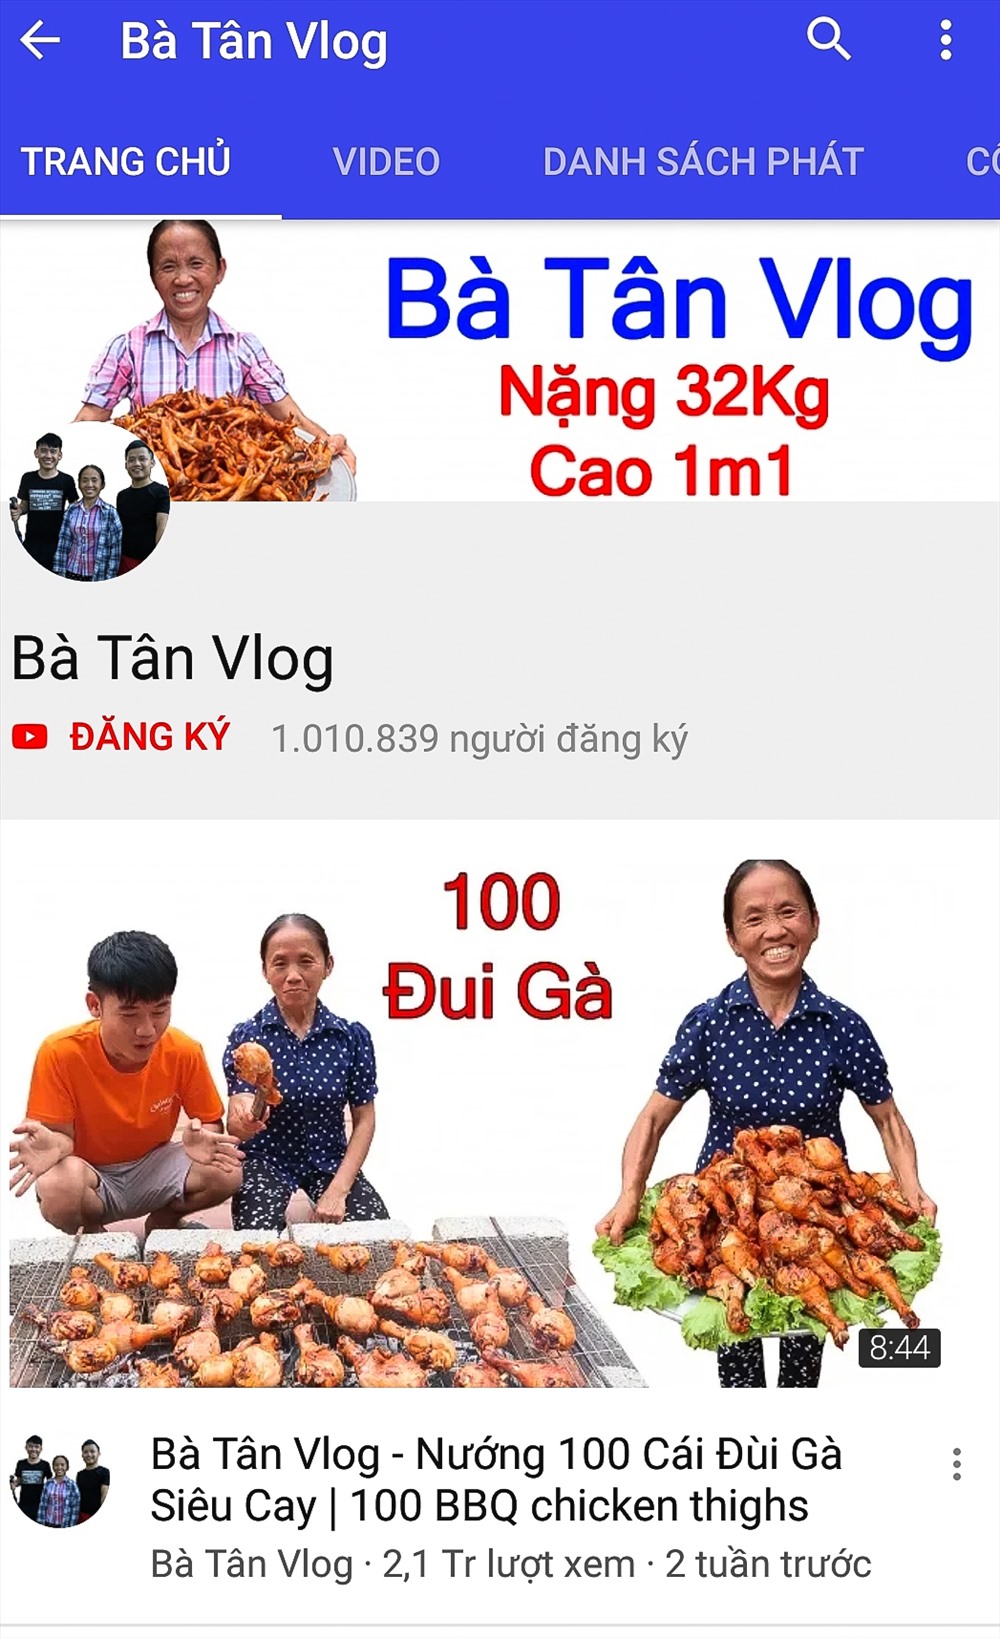 Sau hai tuần đăng tải clip lên nền tảng mạng xã hội Youtube, Bà Tân Vlog nhận về hơn 1 triệu người đăng kí theo dõi.